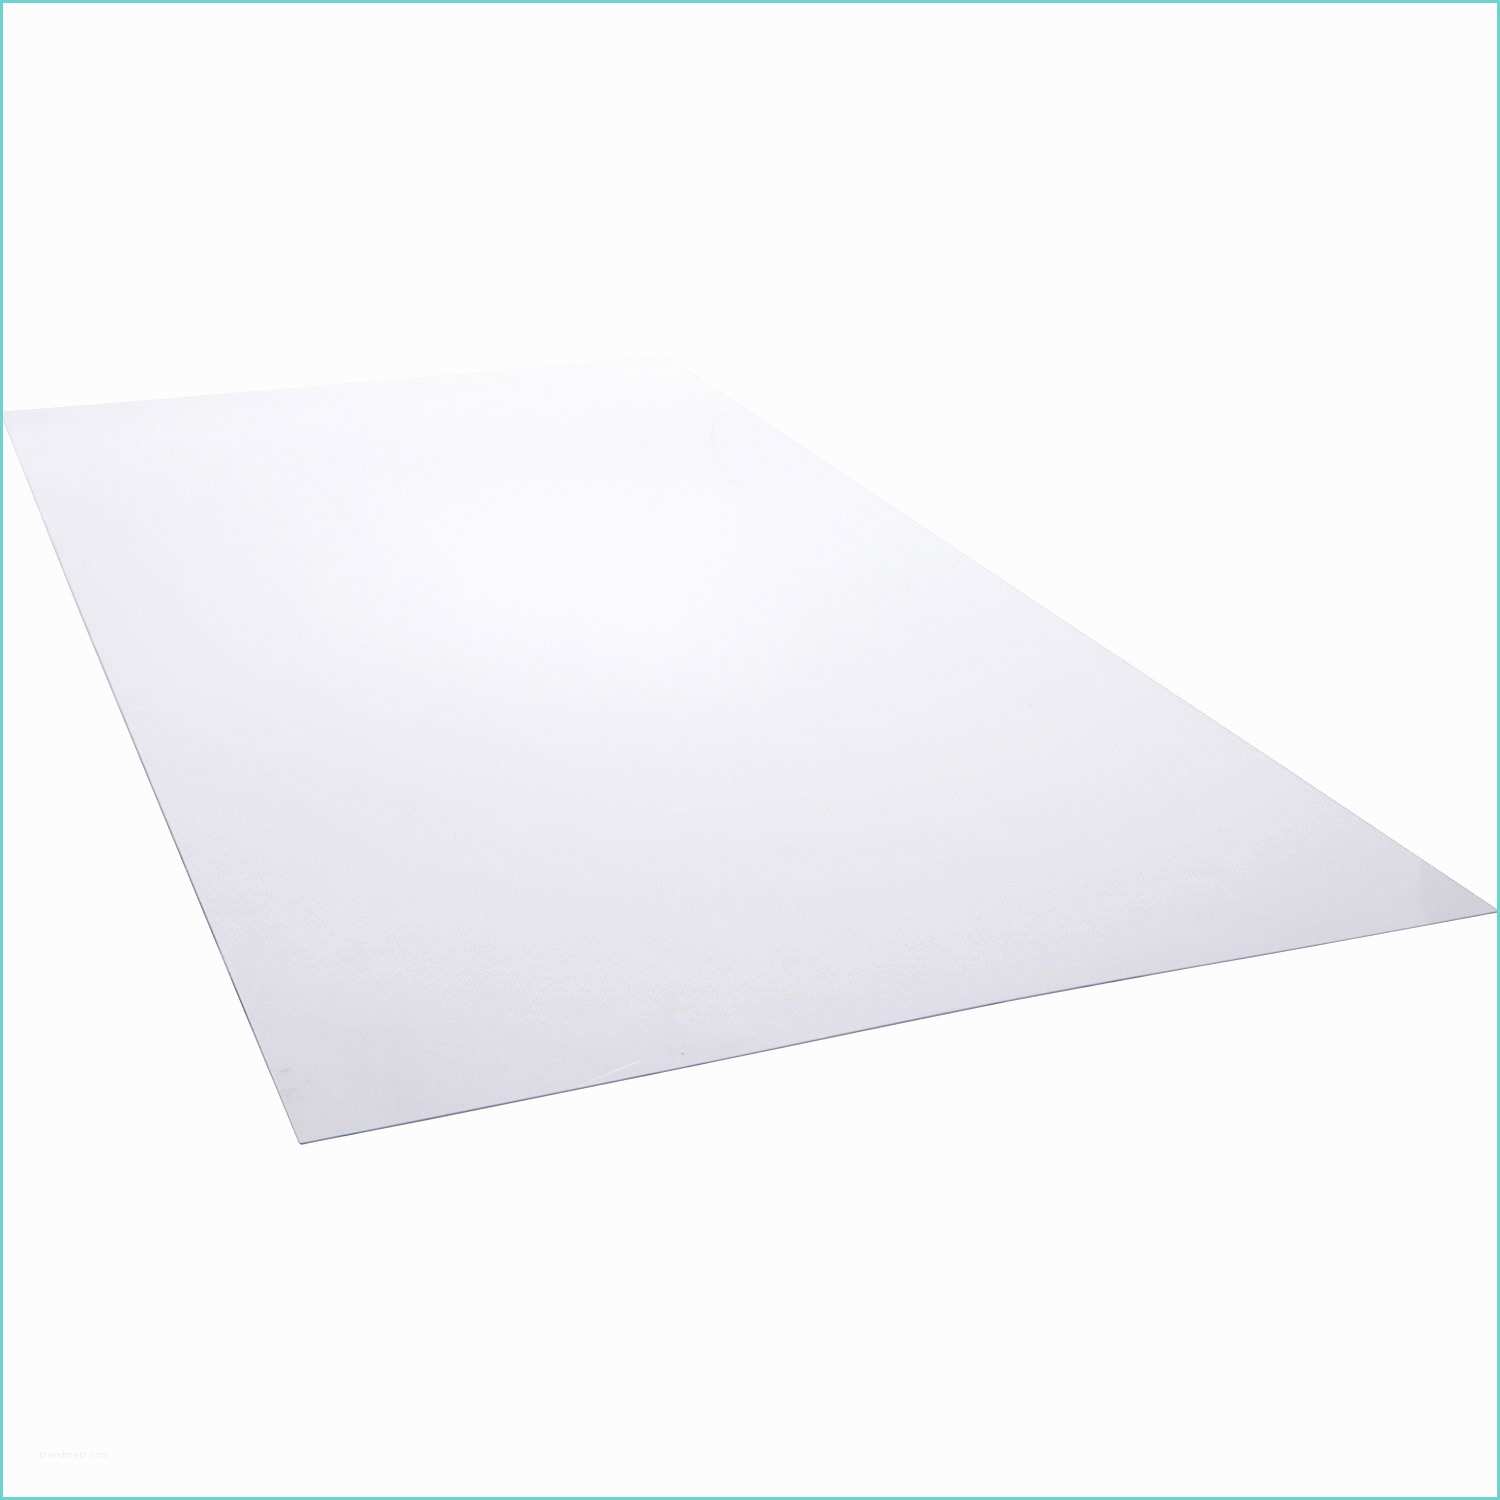 Plaque Plexiglass Sur Mesure Castorama Plaque Polystyrène Transparent Lisse L 200 X L 100 Cm X